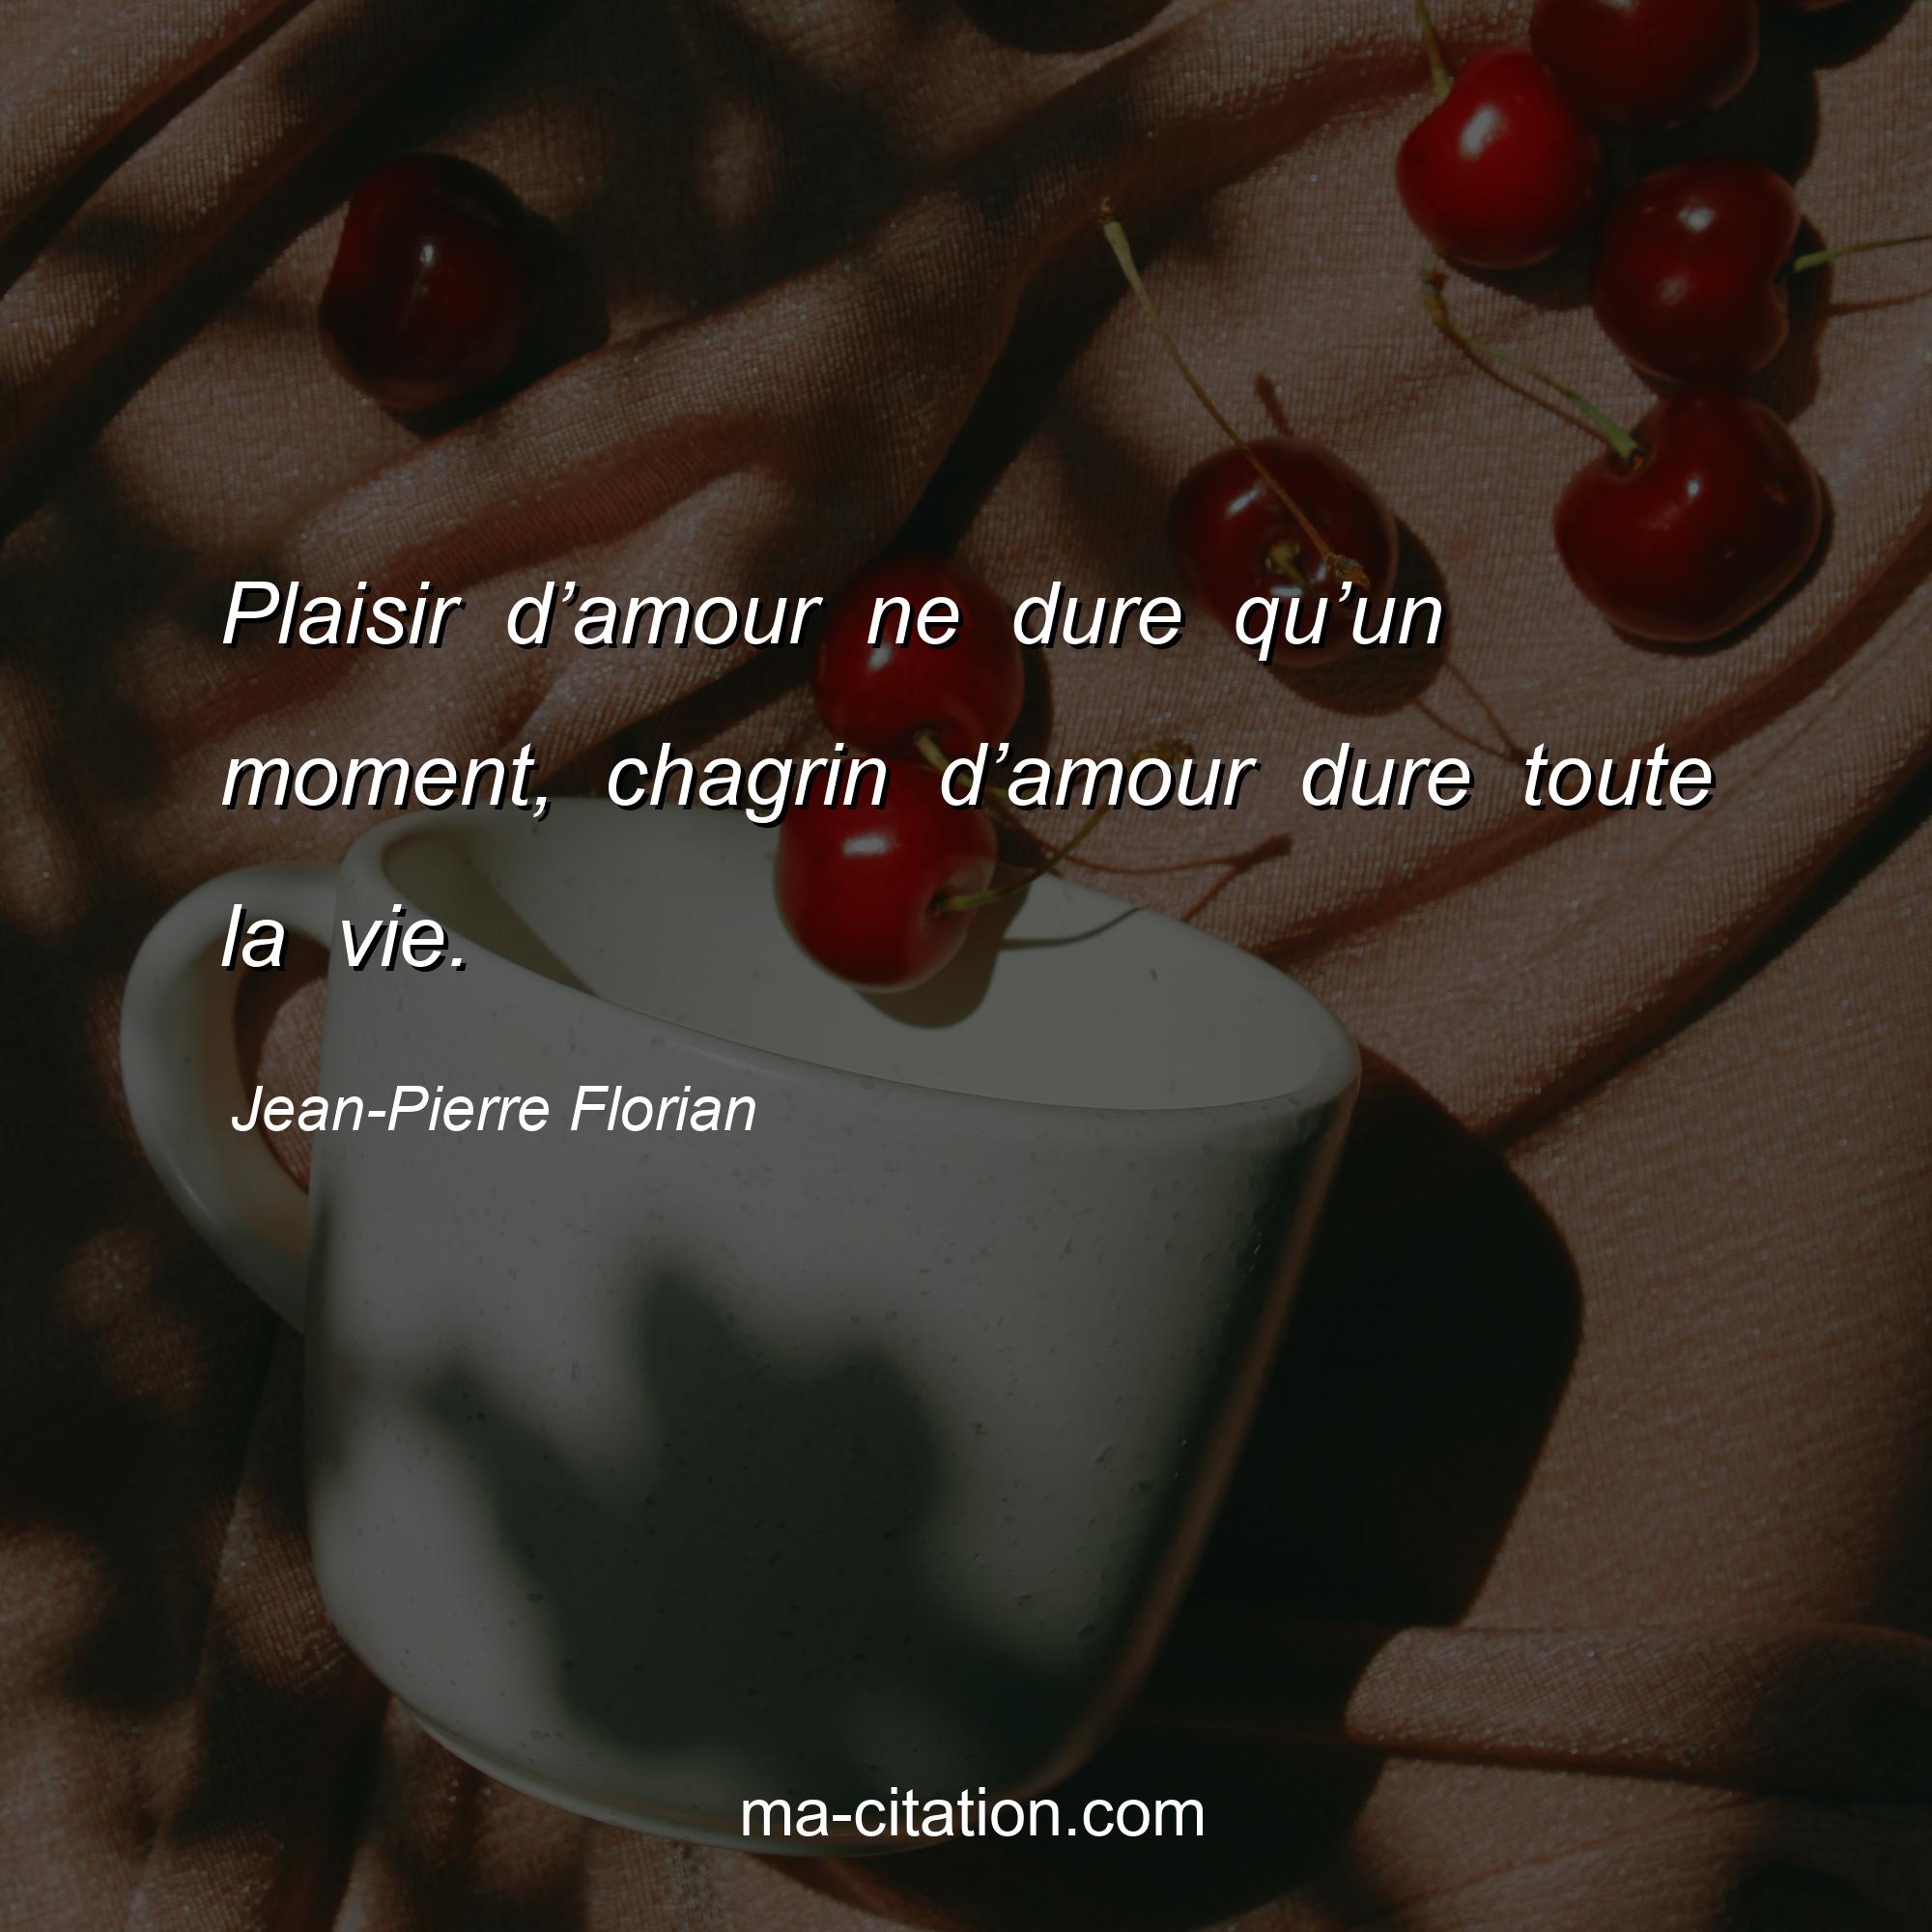 Jean-Pierre Florian : Plaisir d’amour ne dure qu’un moment, chagrin d’amour dure toute la vie.